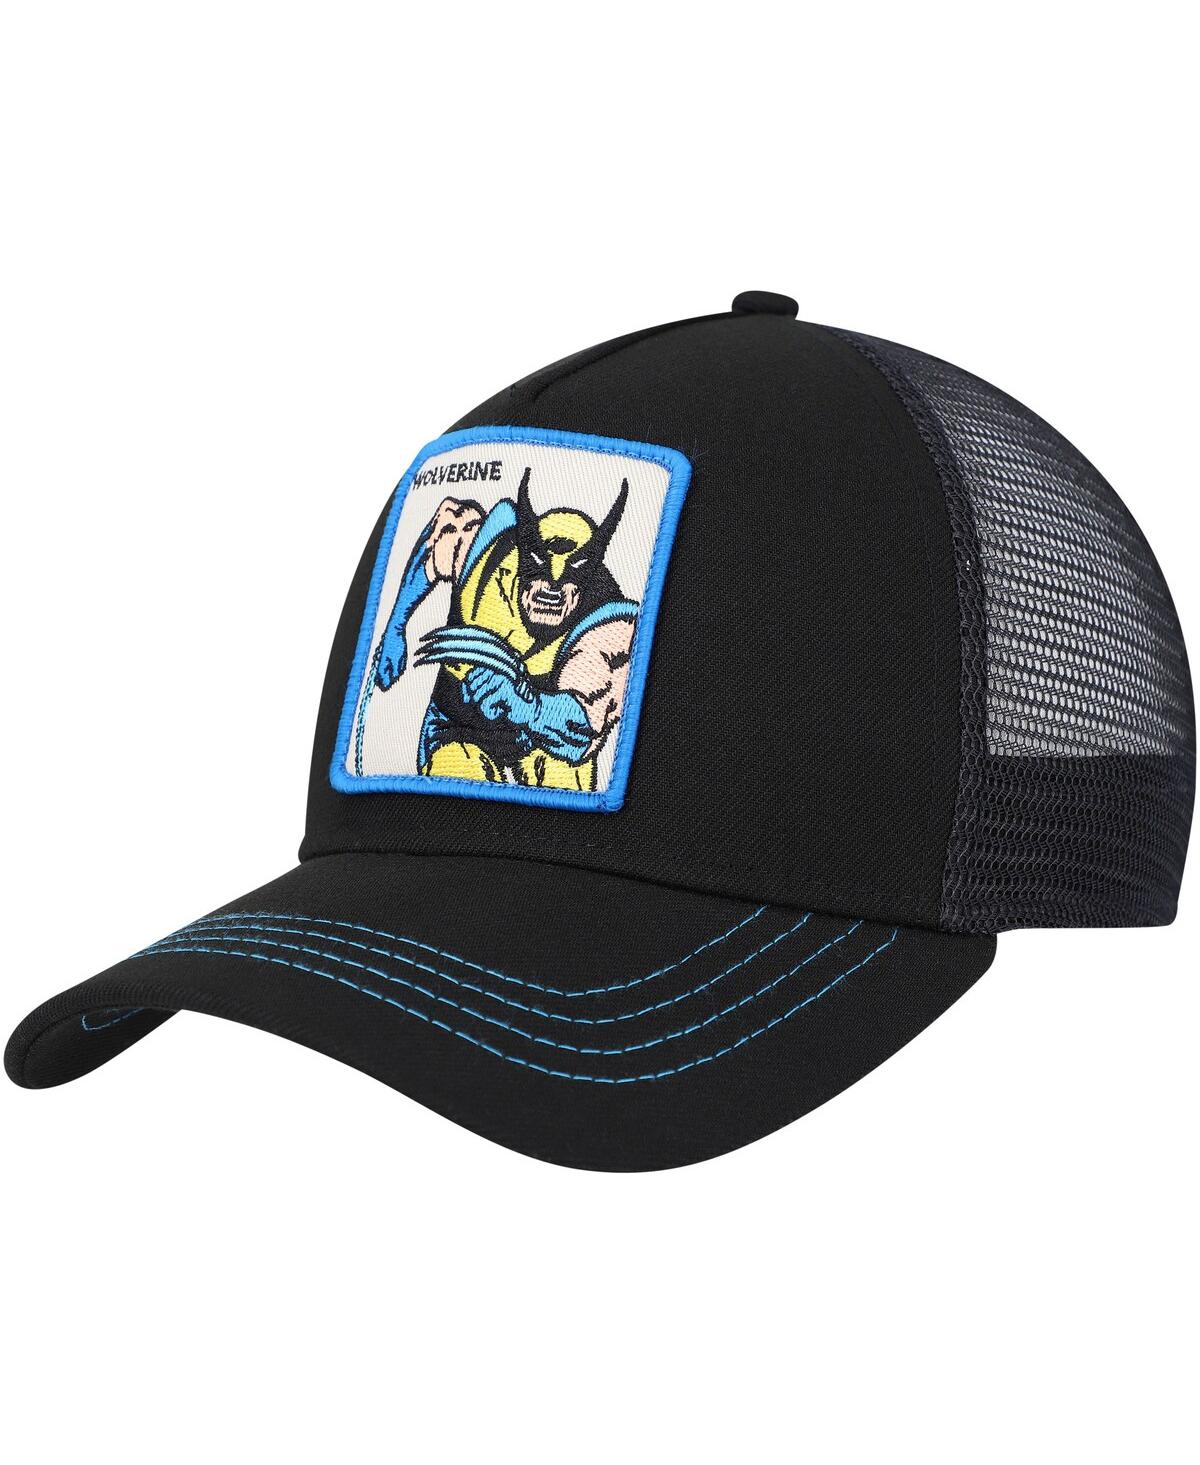 Lids Men's Black X Men Wolverine Retro A-frame Adjustable Hat